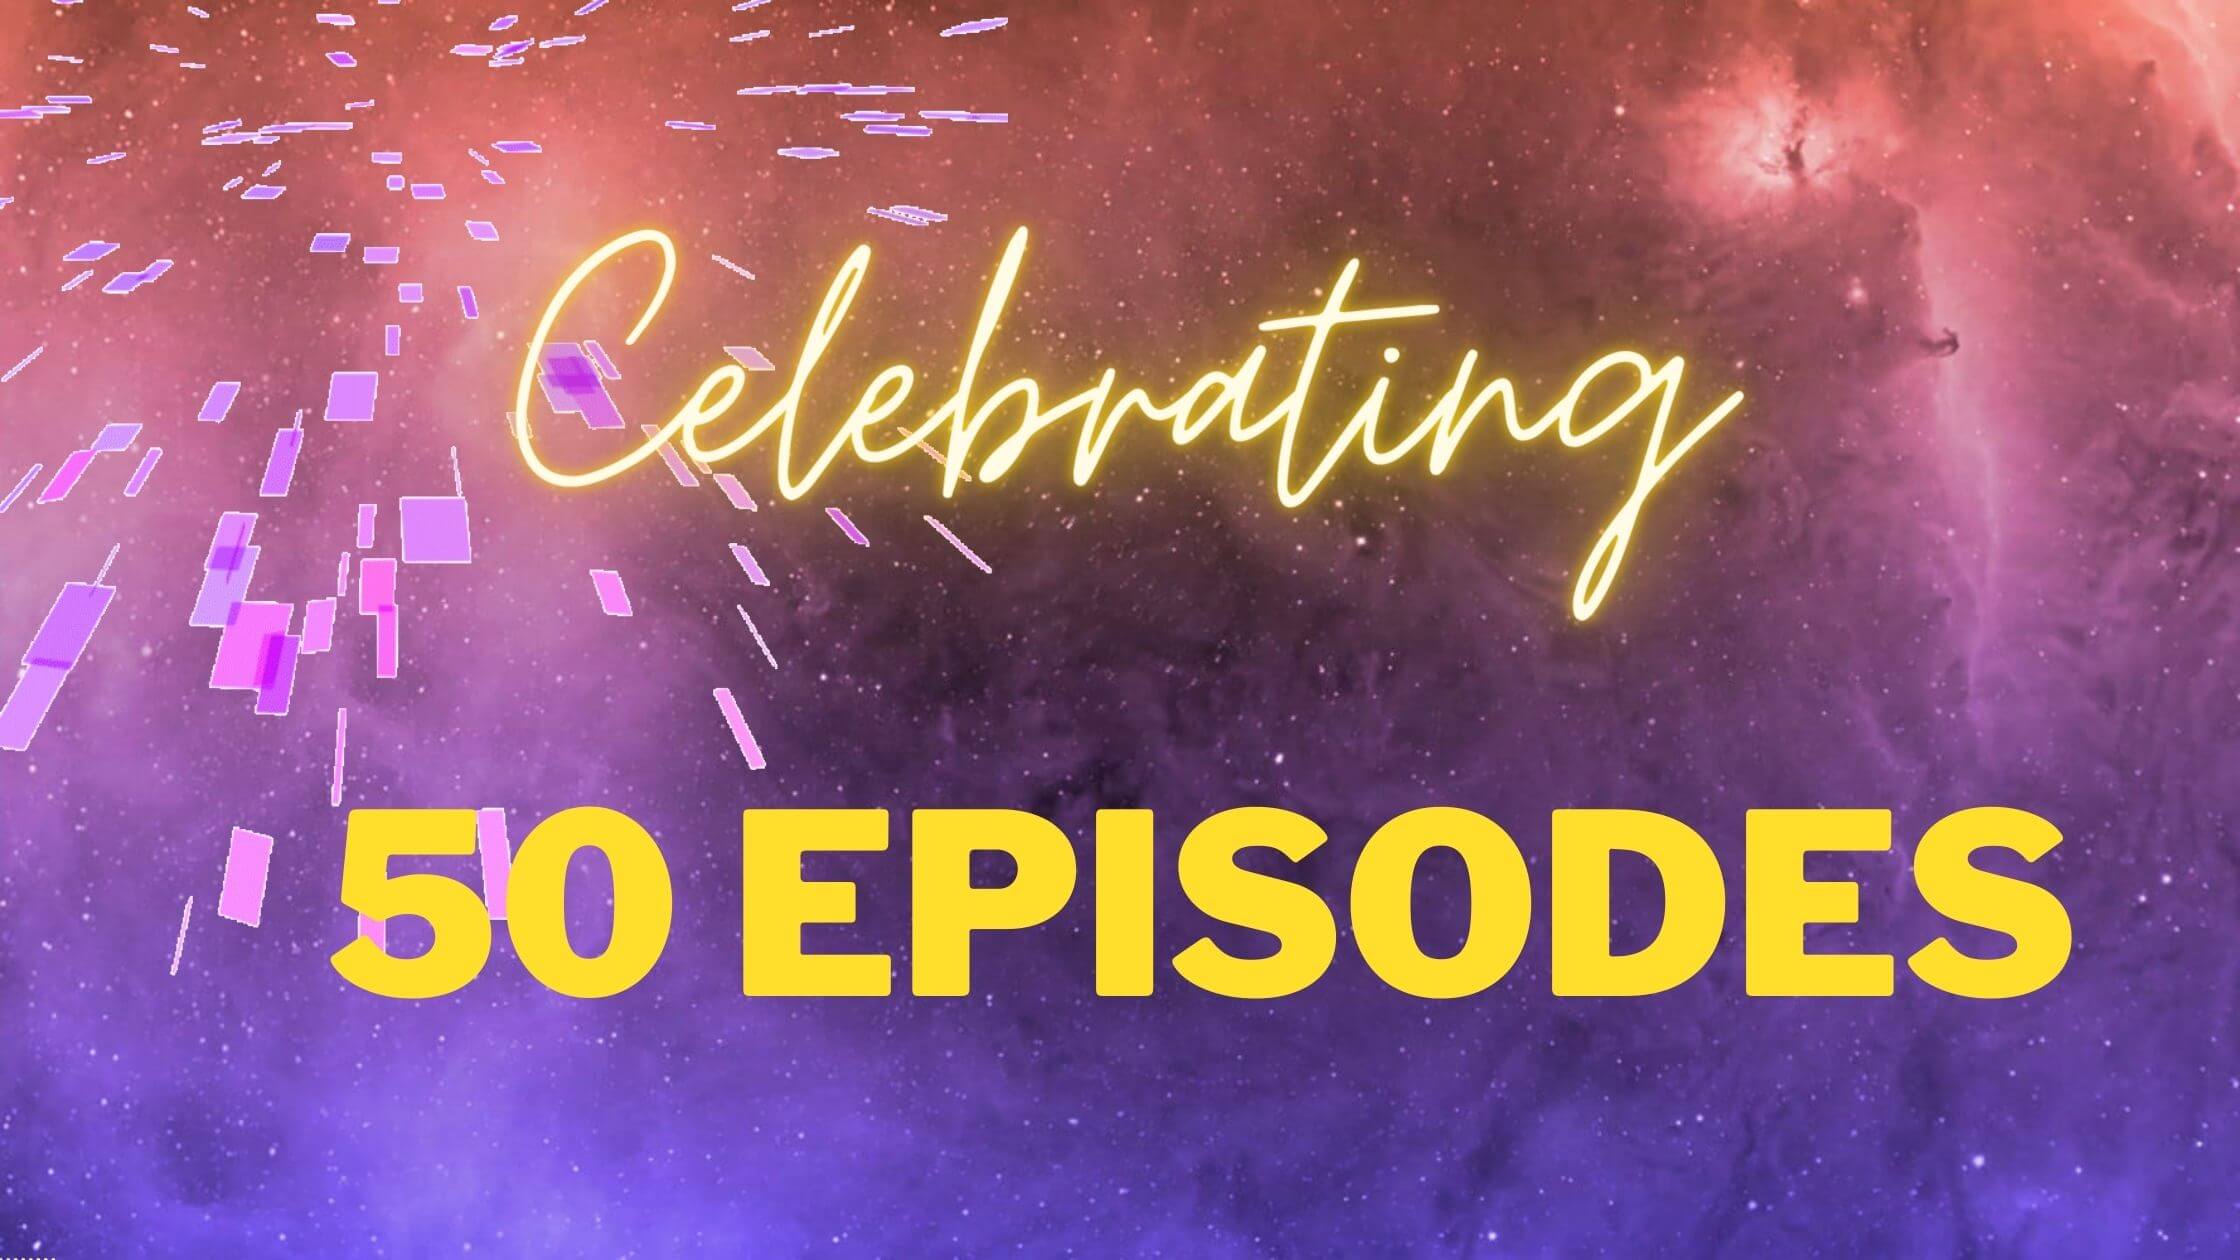 050: Celebrating 50 episodes